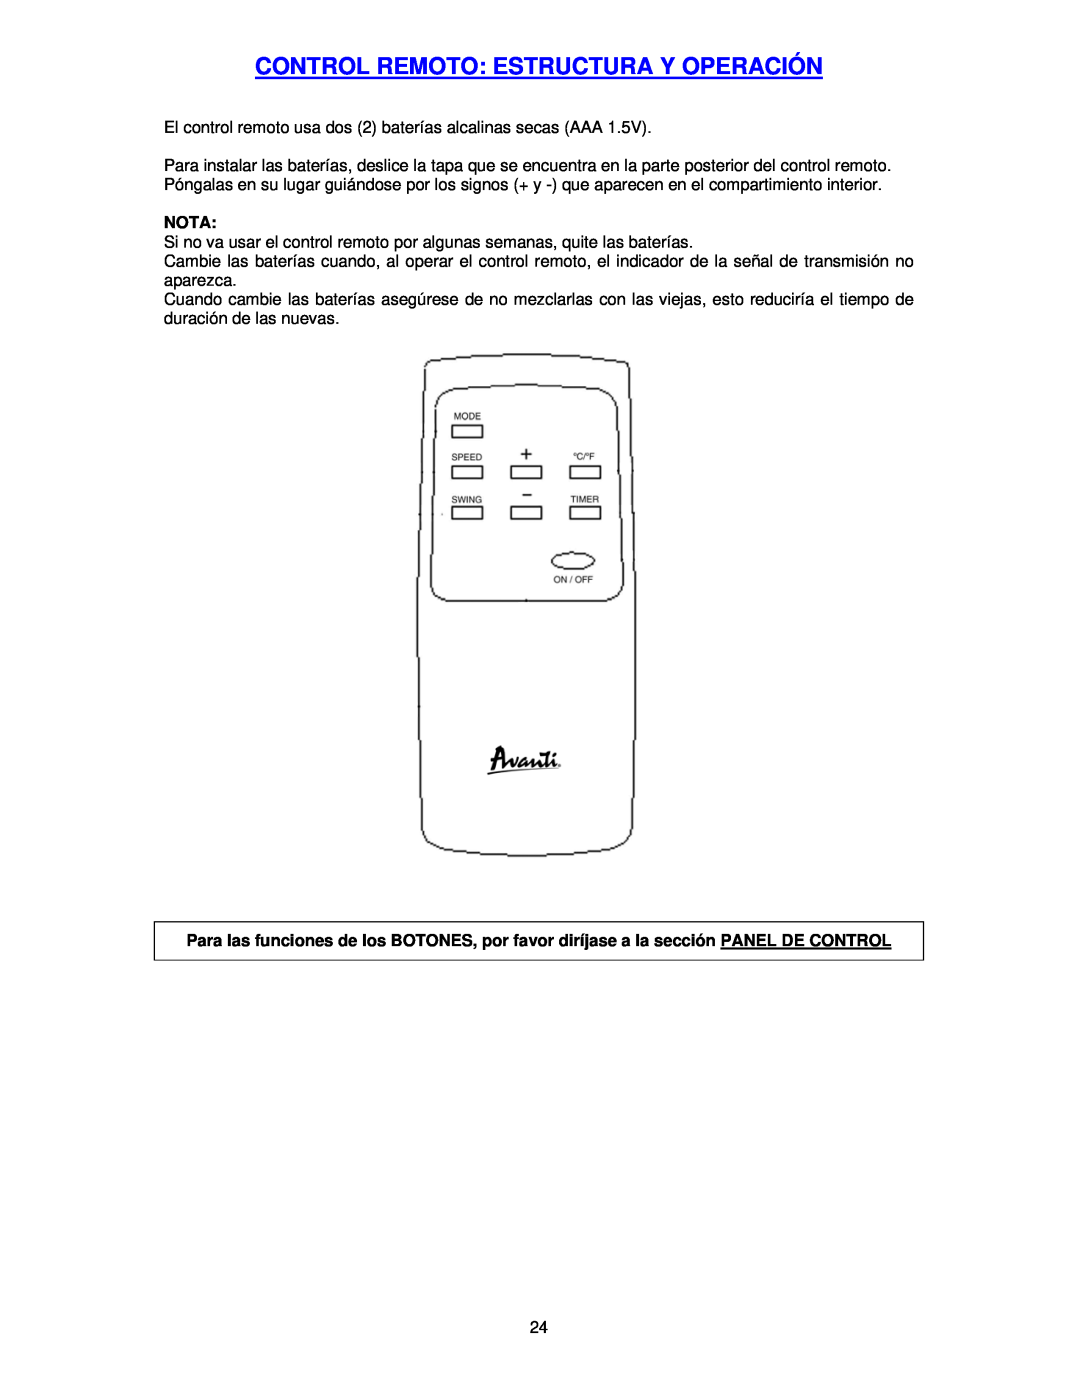 Avanti PAC12000 instruction manual Control Remoto: Estructura Y Operación, Nota 